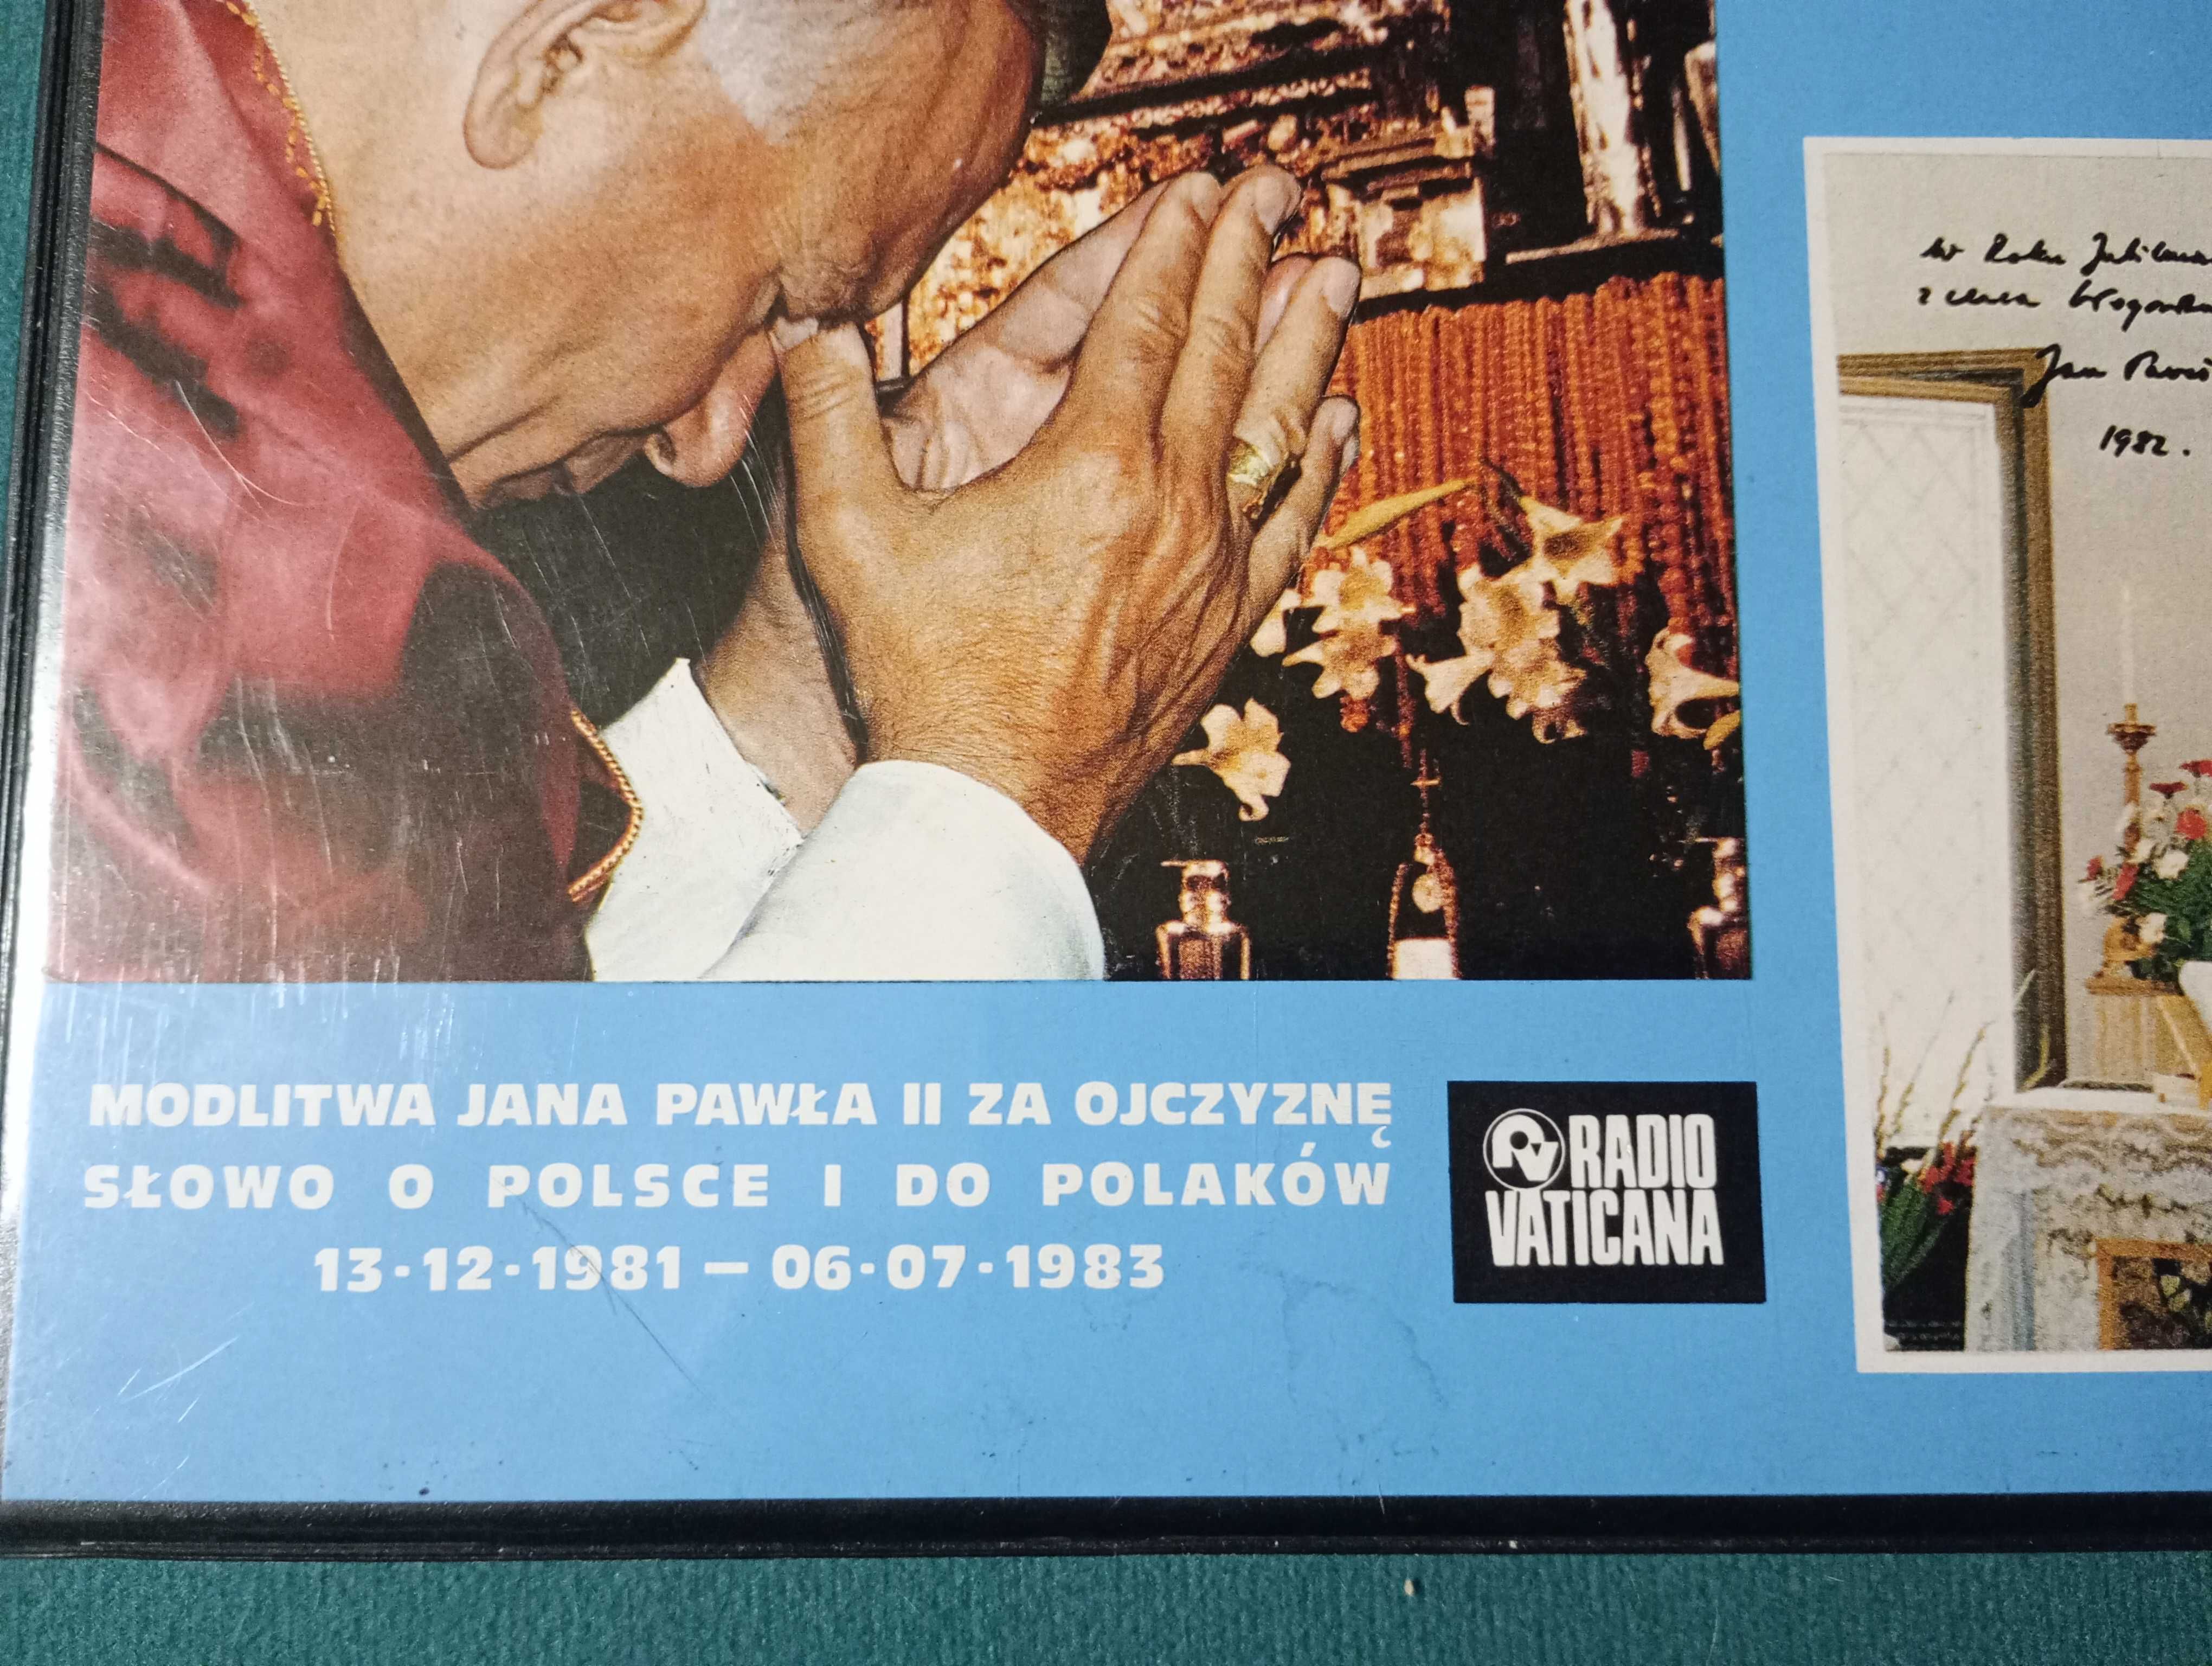 Radiomagnetofon + Jan Paweł II 6 kaset Vaticana